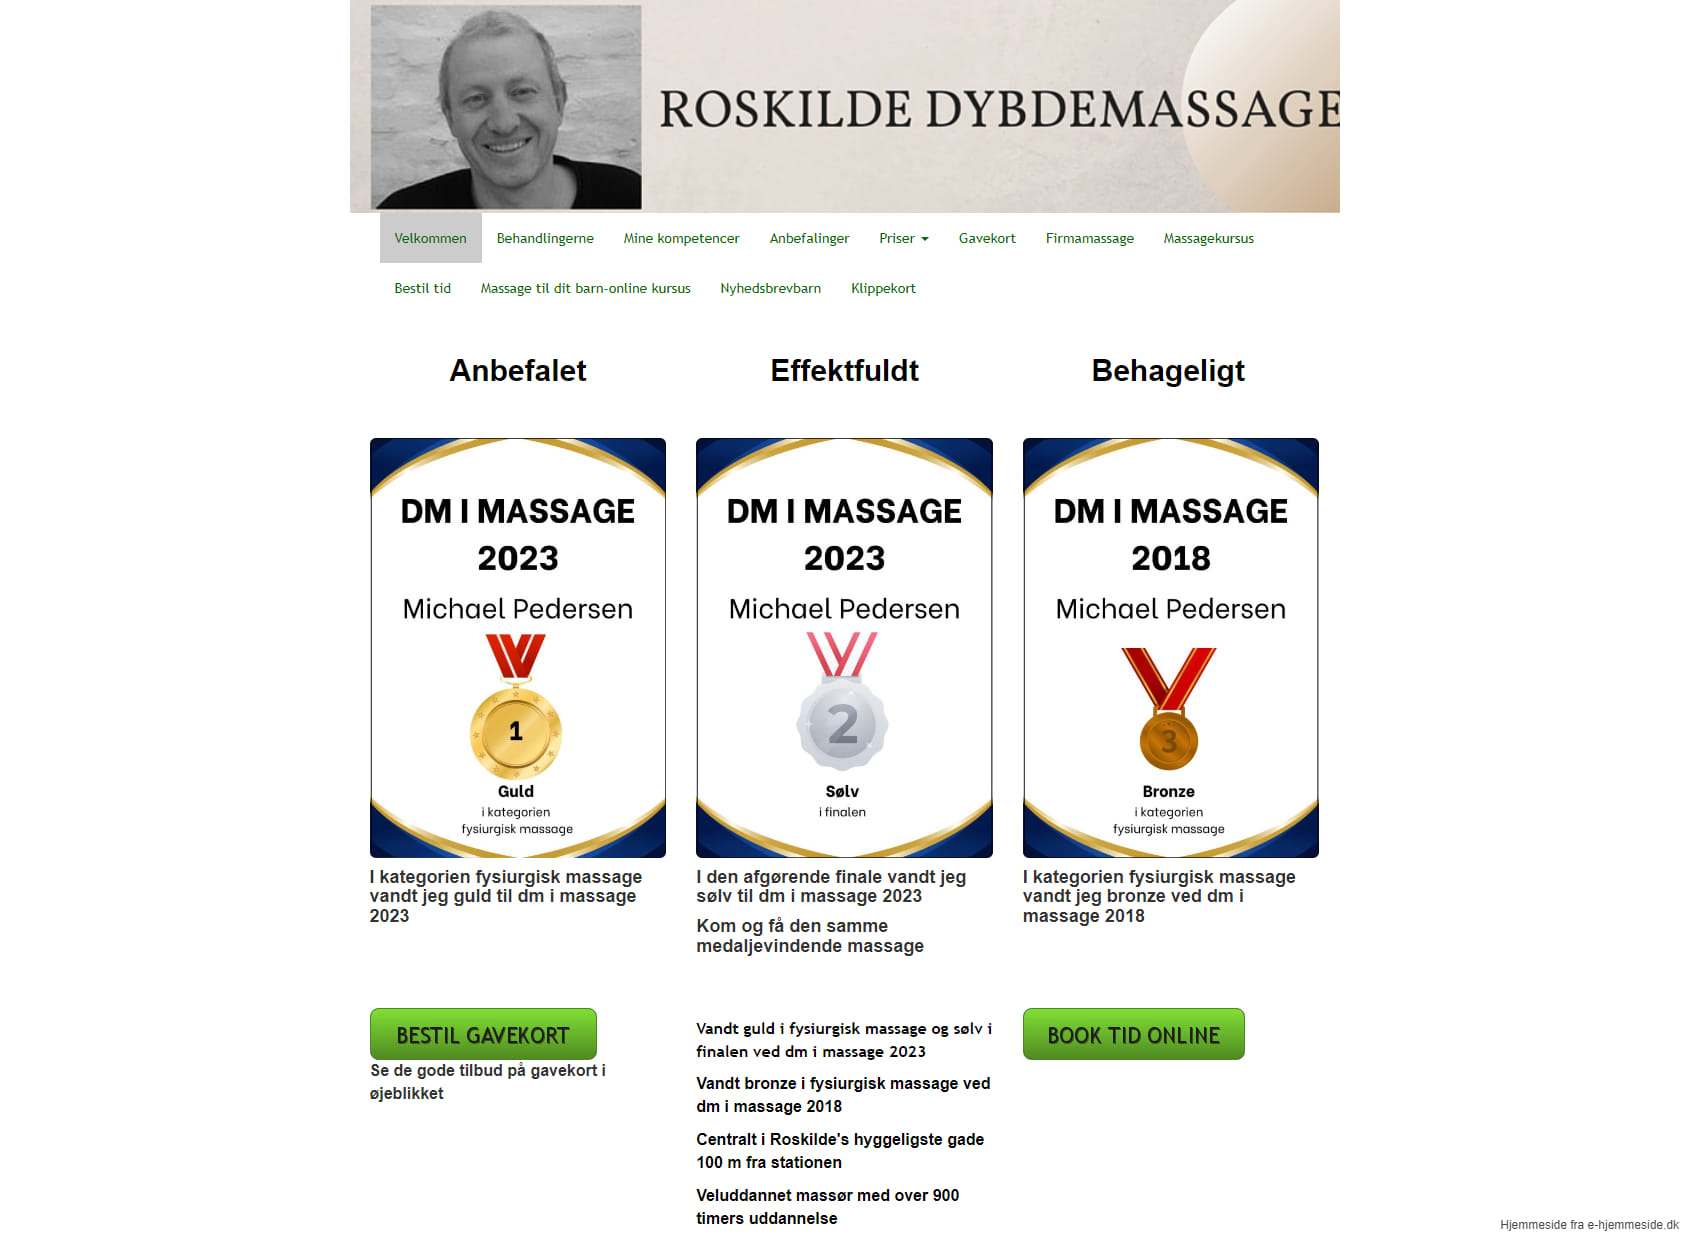 Roskilde dybdemassage